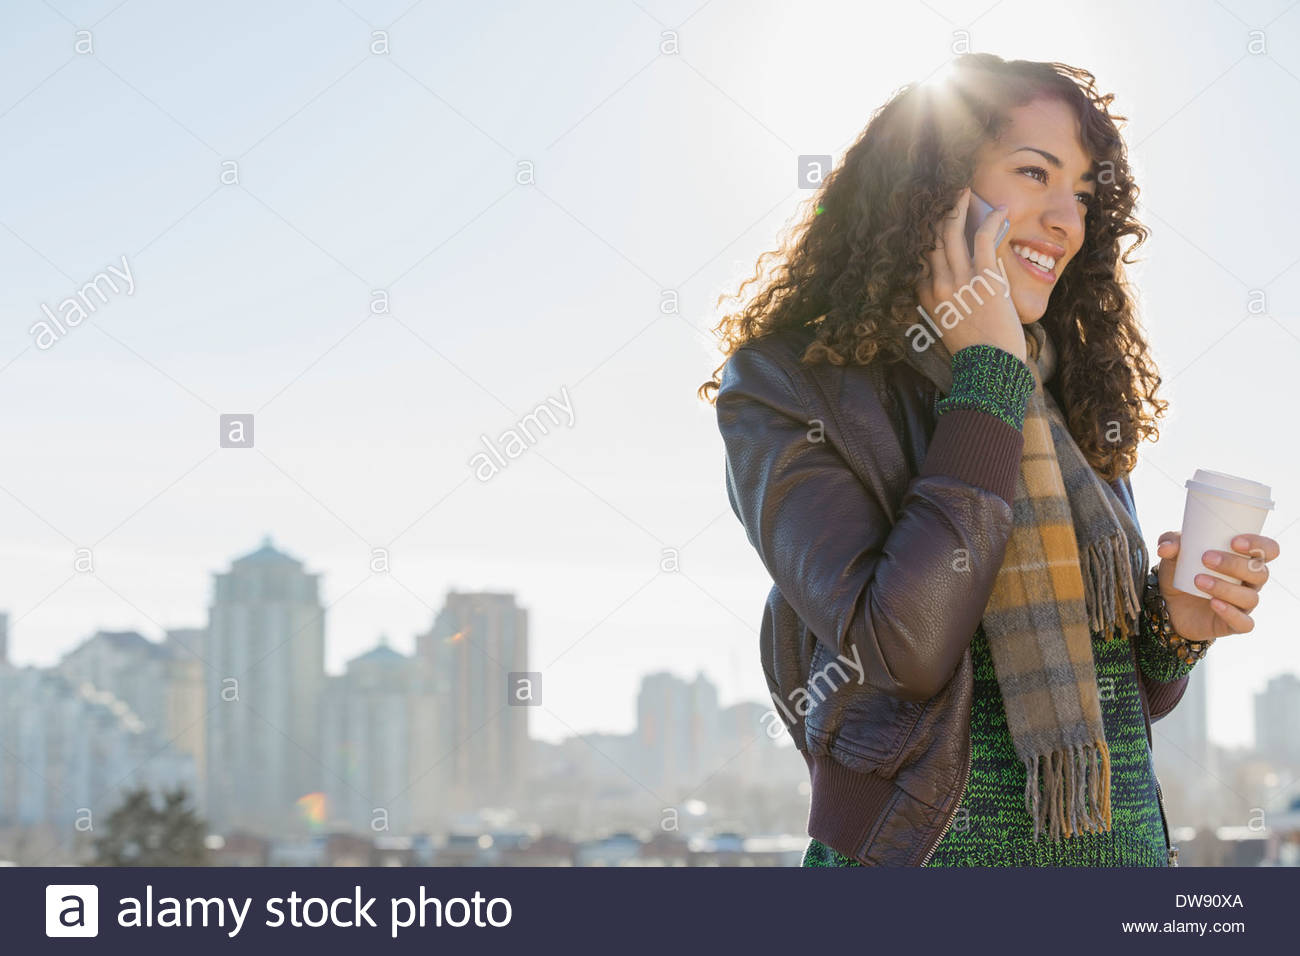 Smiling woman répondre à smart phone contre cityscape Banque D'Images